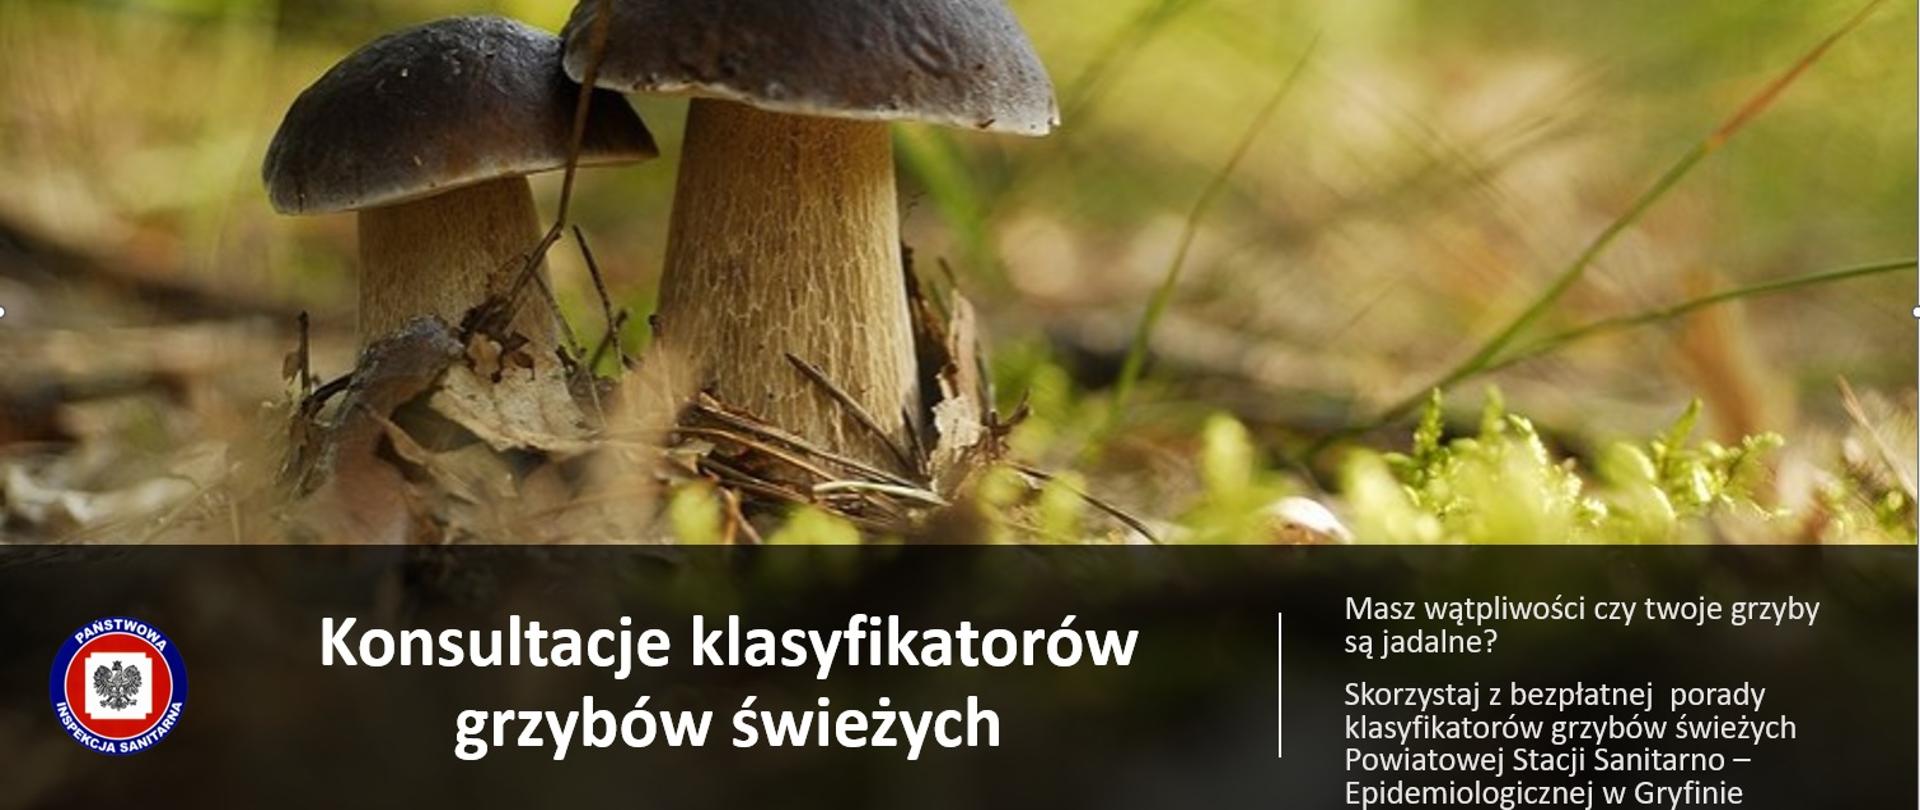 Zdjęcie borowików na tle ściółki leśnej, poniżej podpis Konsultacje klasyfikatorów grzybów świeżych